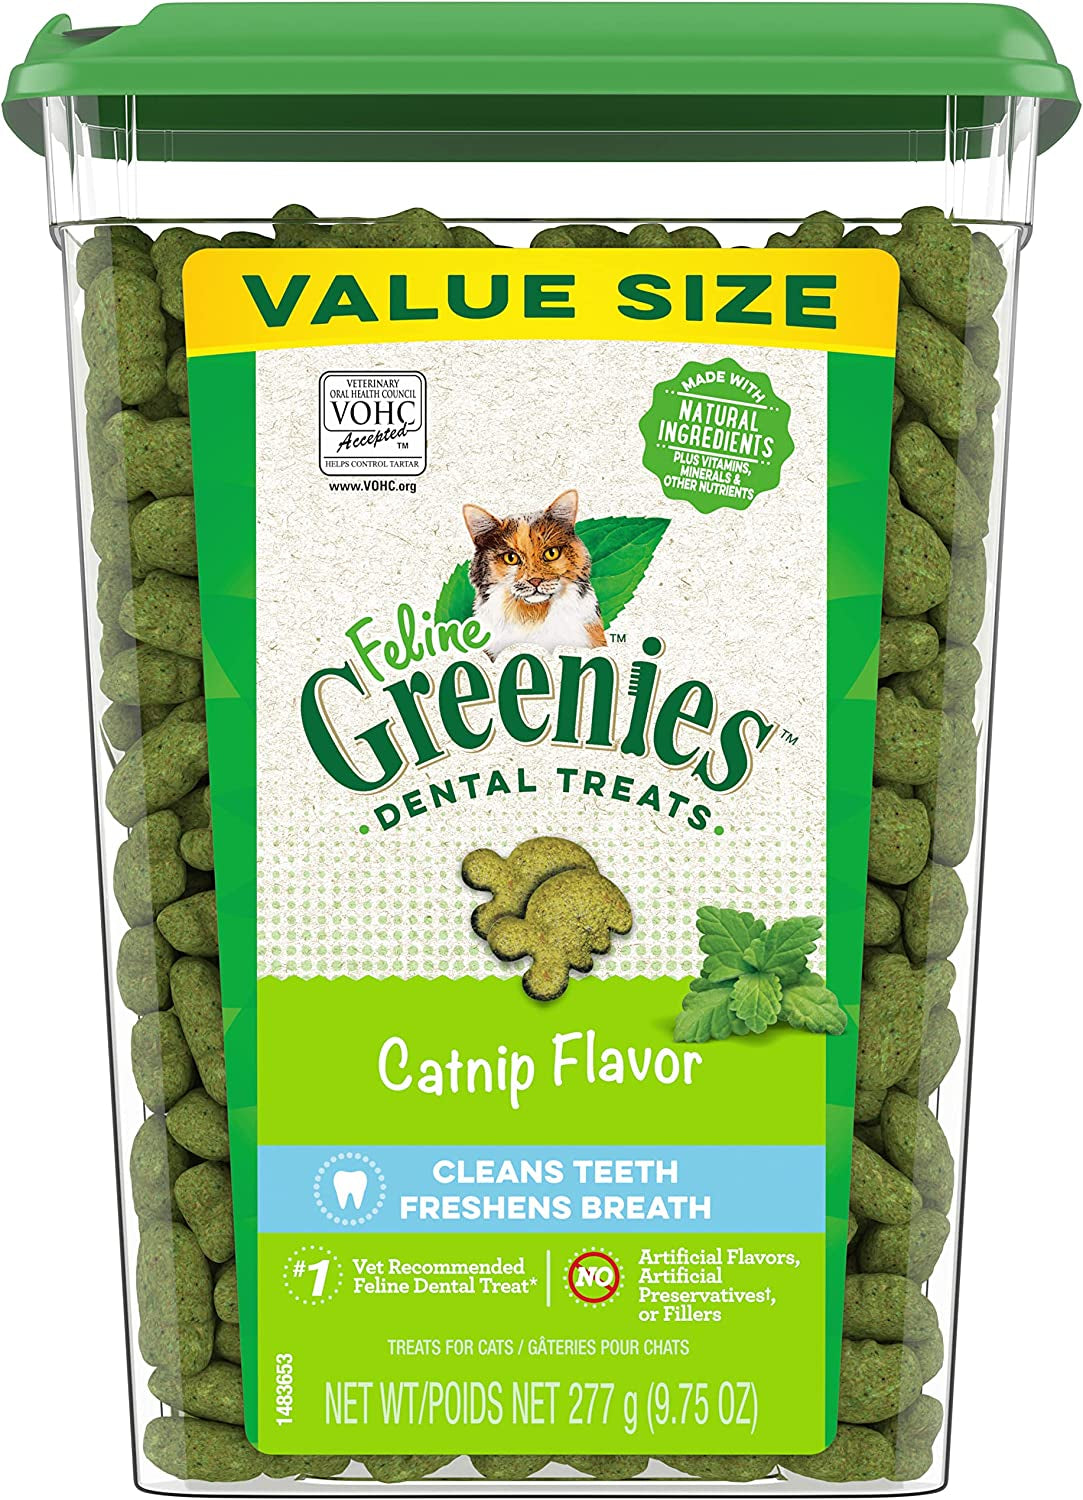 FELINE GREENIES Adult Dental Cat Treats, Catnip Flavor, 9.75 Oz. Tub